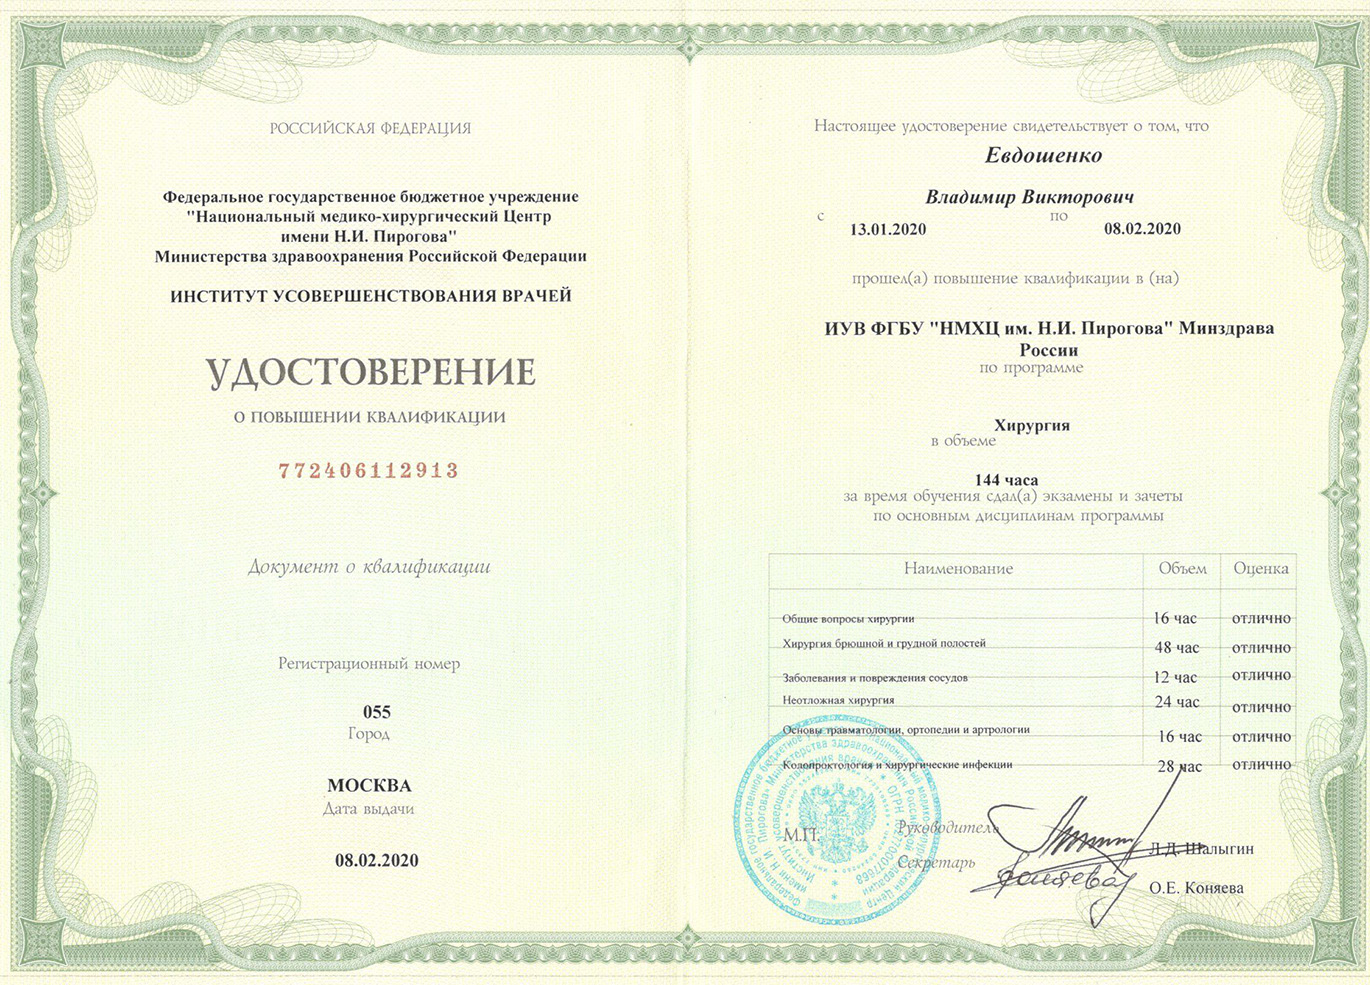 Владимир Викторови Евдошенко - сертификат